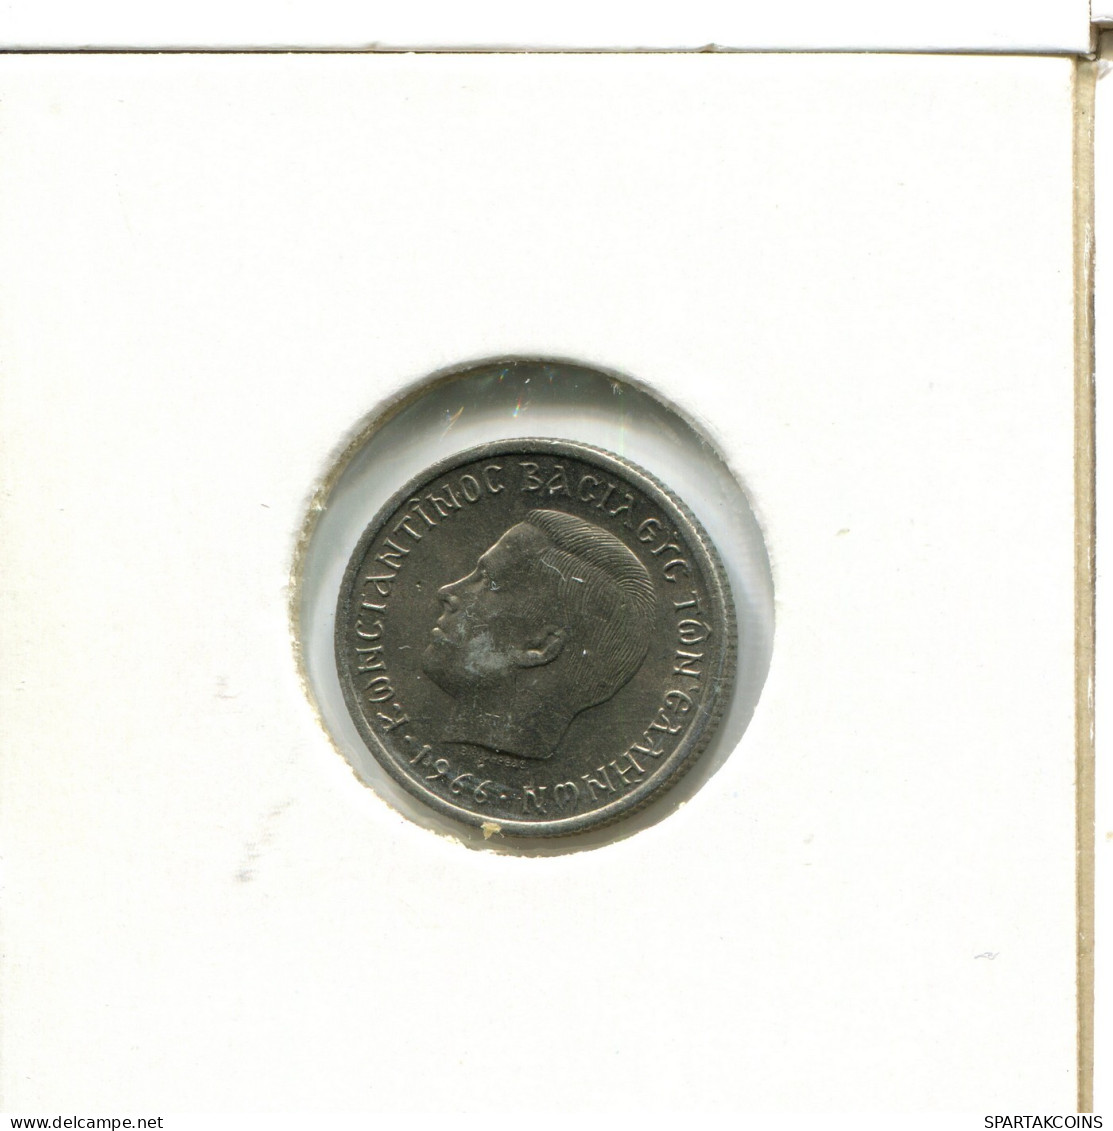 50 LEPTA 1966 GRIECHENLAND GREECE Münze #AX623.D.A - Greece